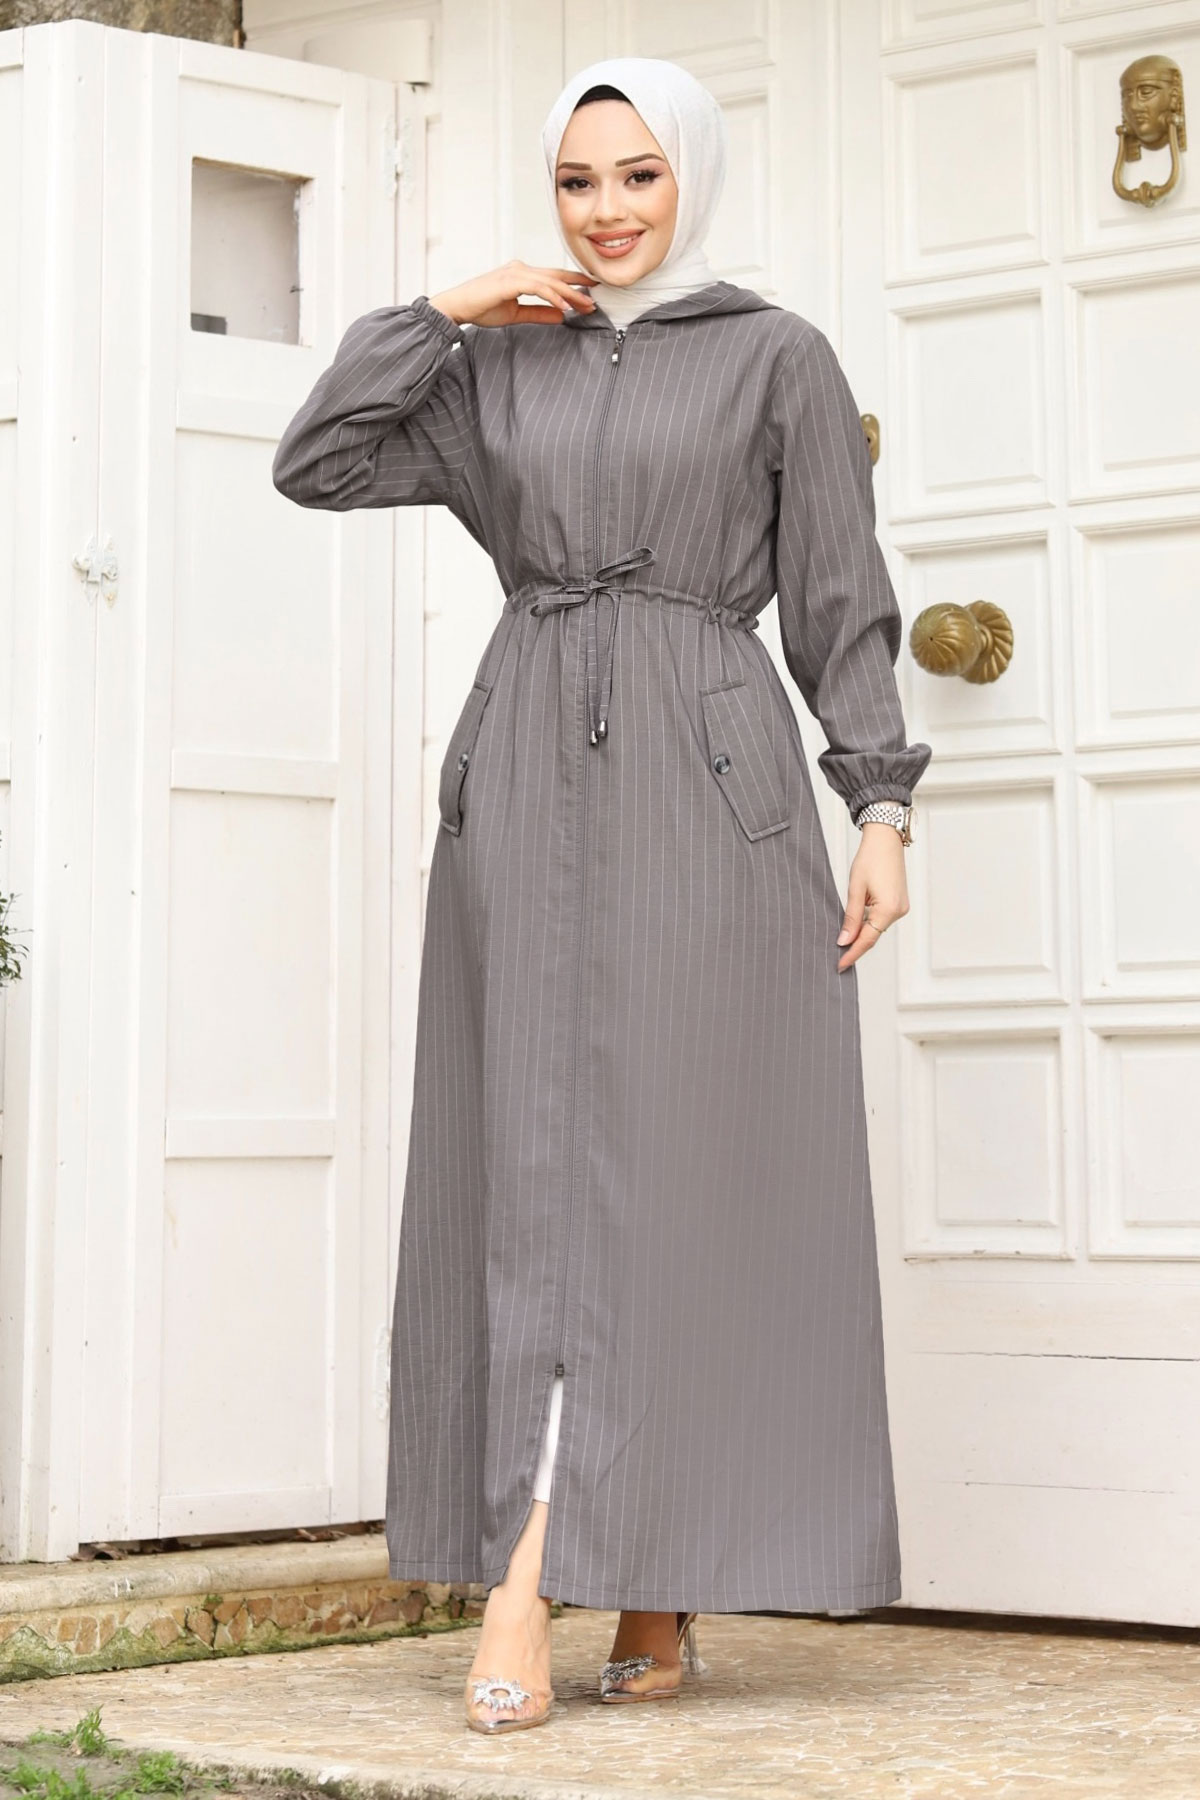 modest dresses for women in poland